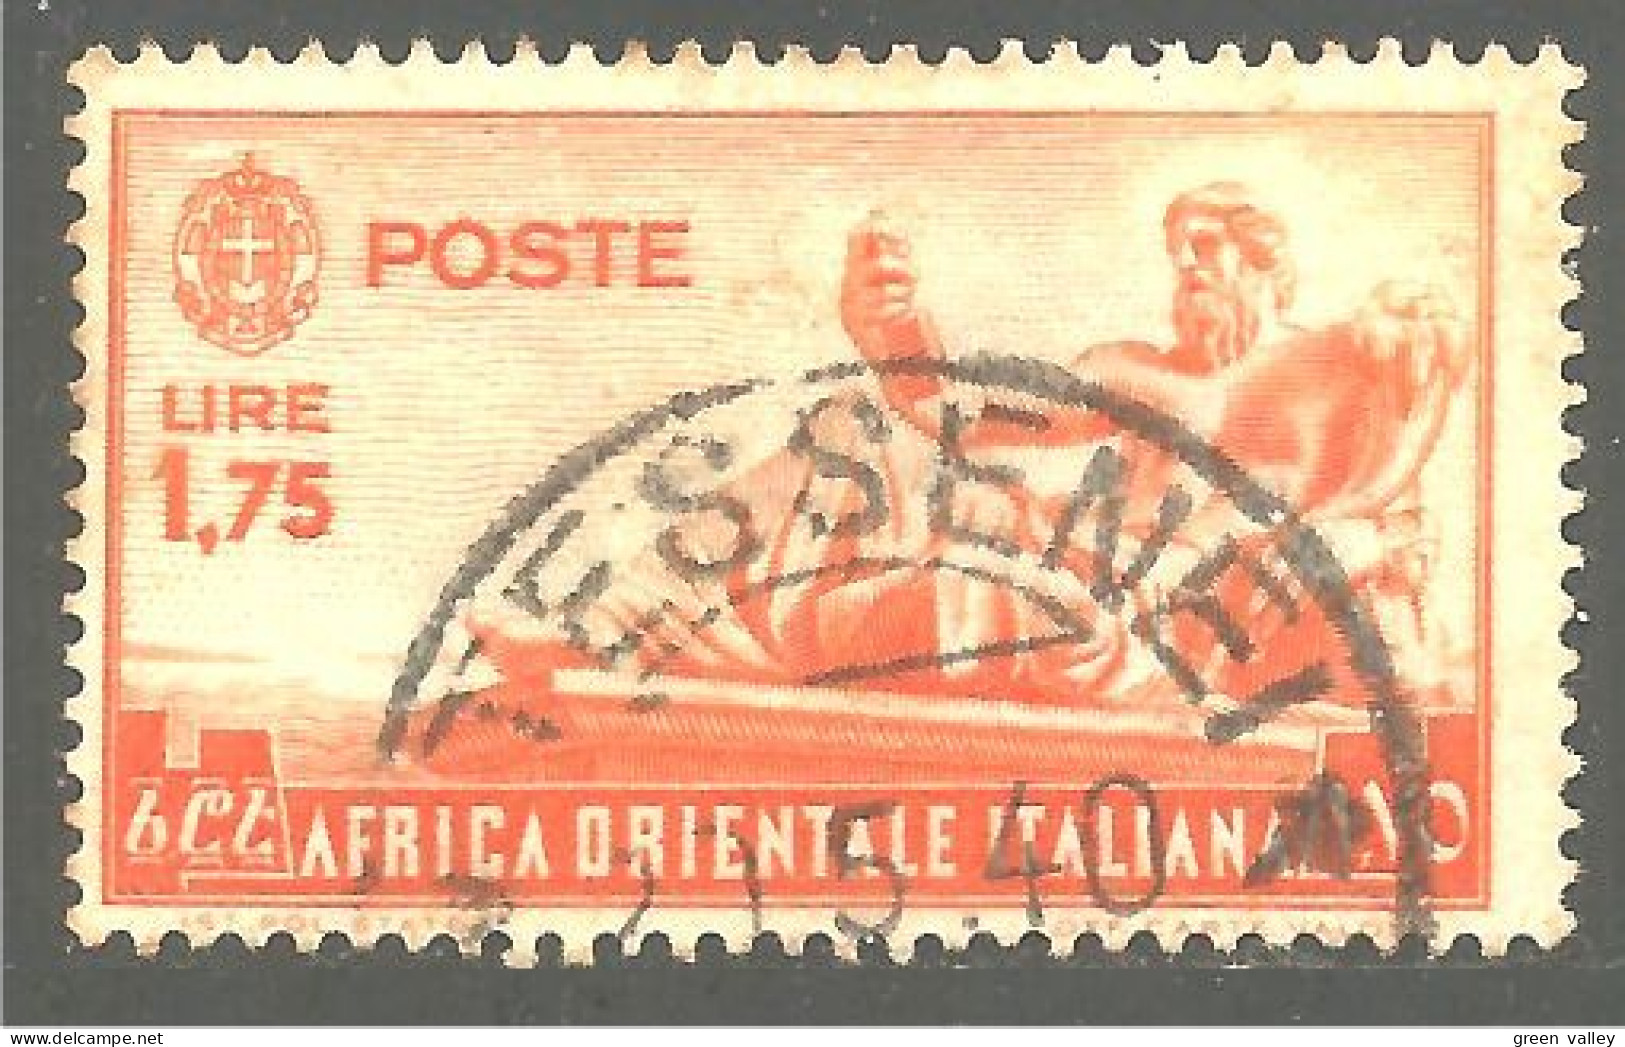 521 Africa Orientale Italiana 1938 Statue Nil Nile (ITC-151a) - Italian Eastern Africa